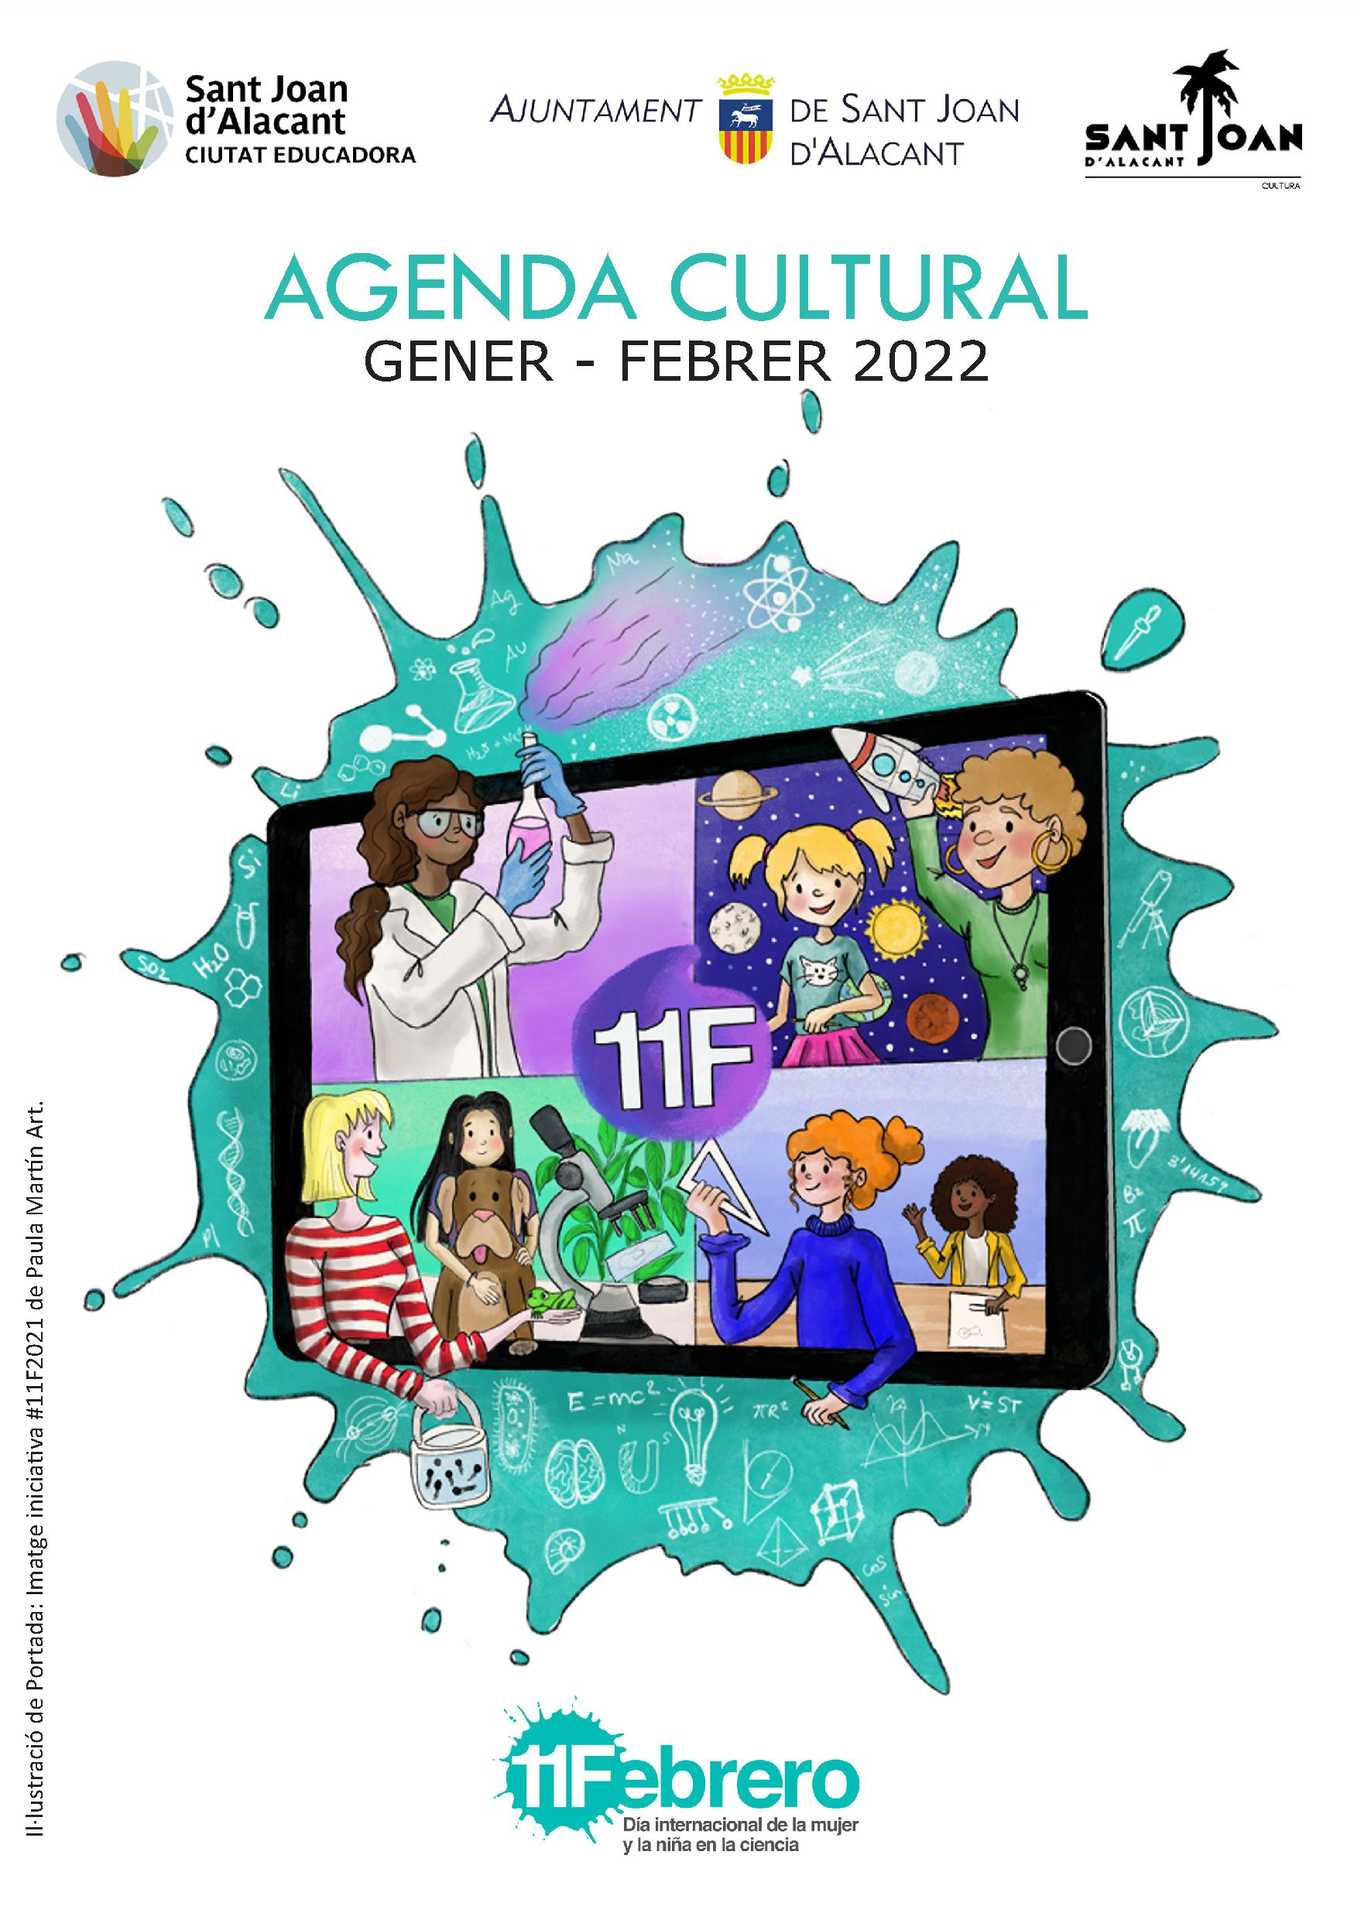 Agenda Cultural de Sant Joan d'Alacant enero-febrero 2022